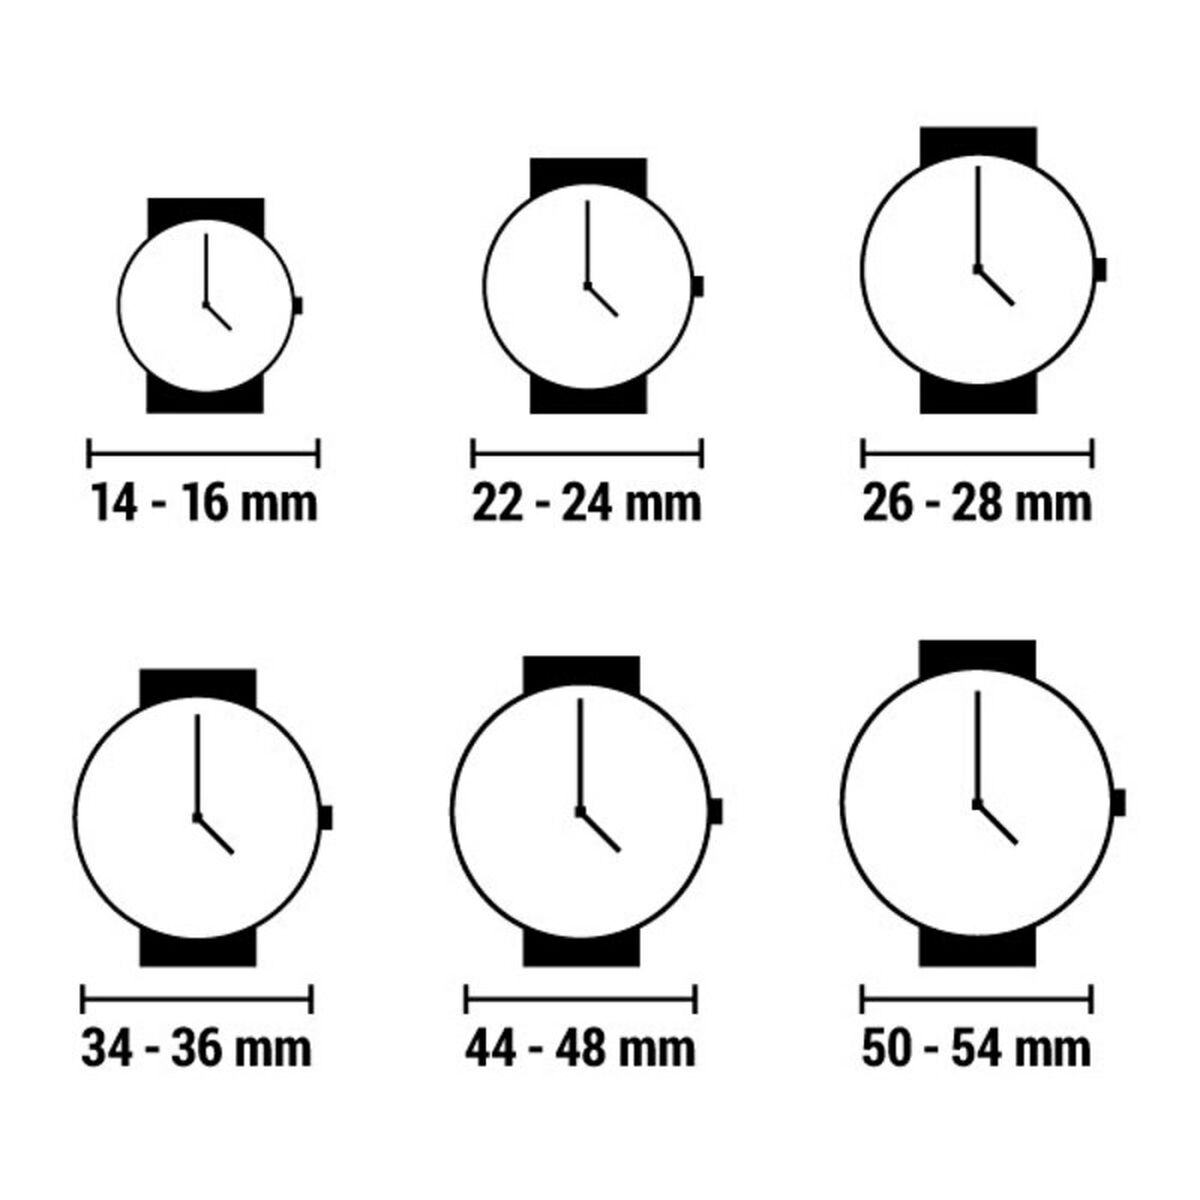 Horloge Dames Esprit ES1L065M0065 (Ø 32 mm)